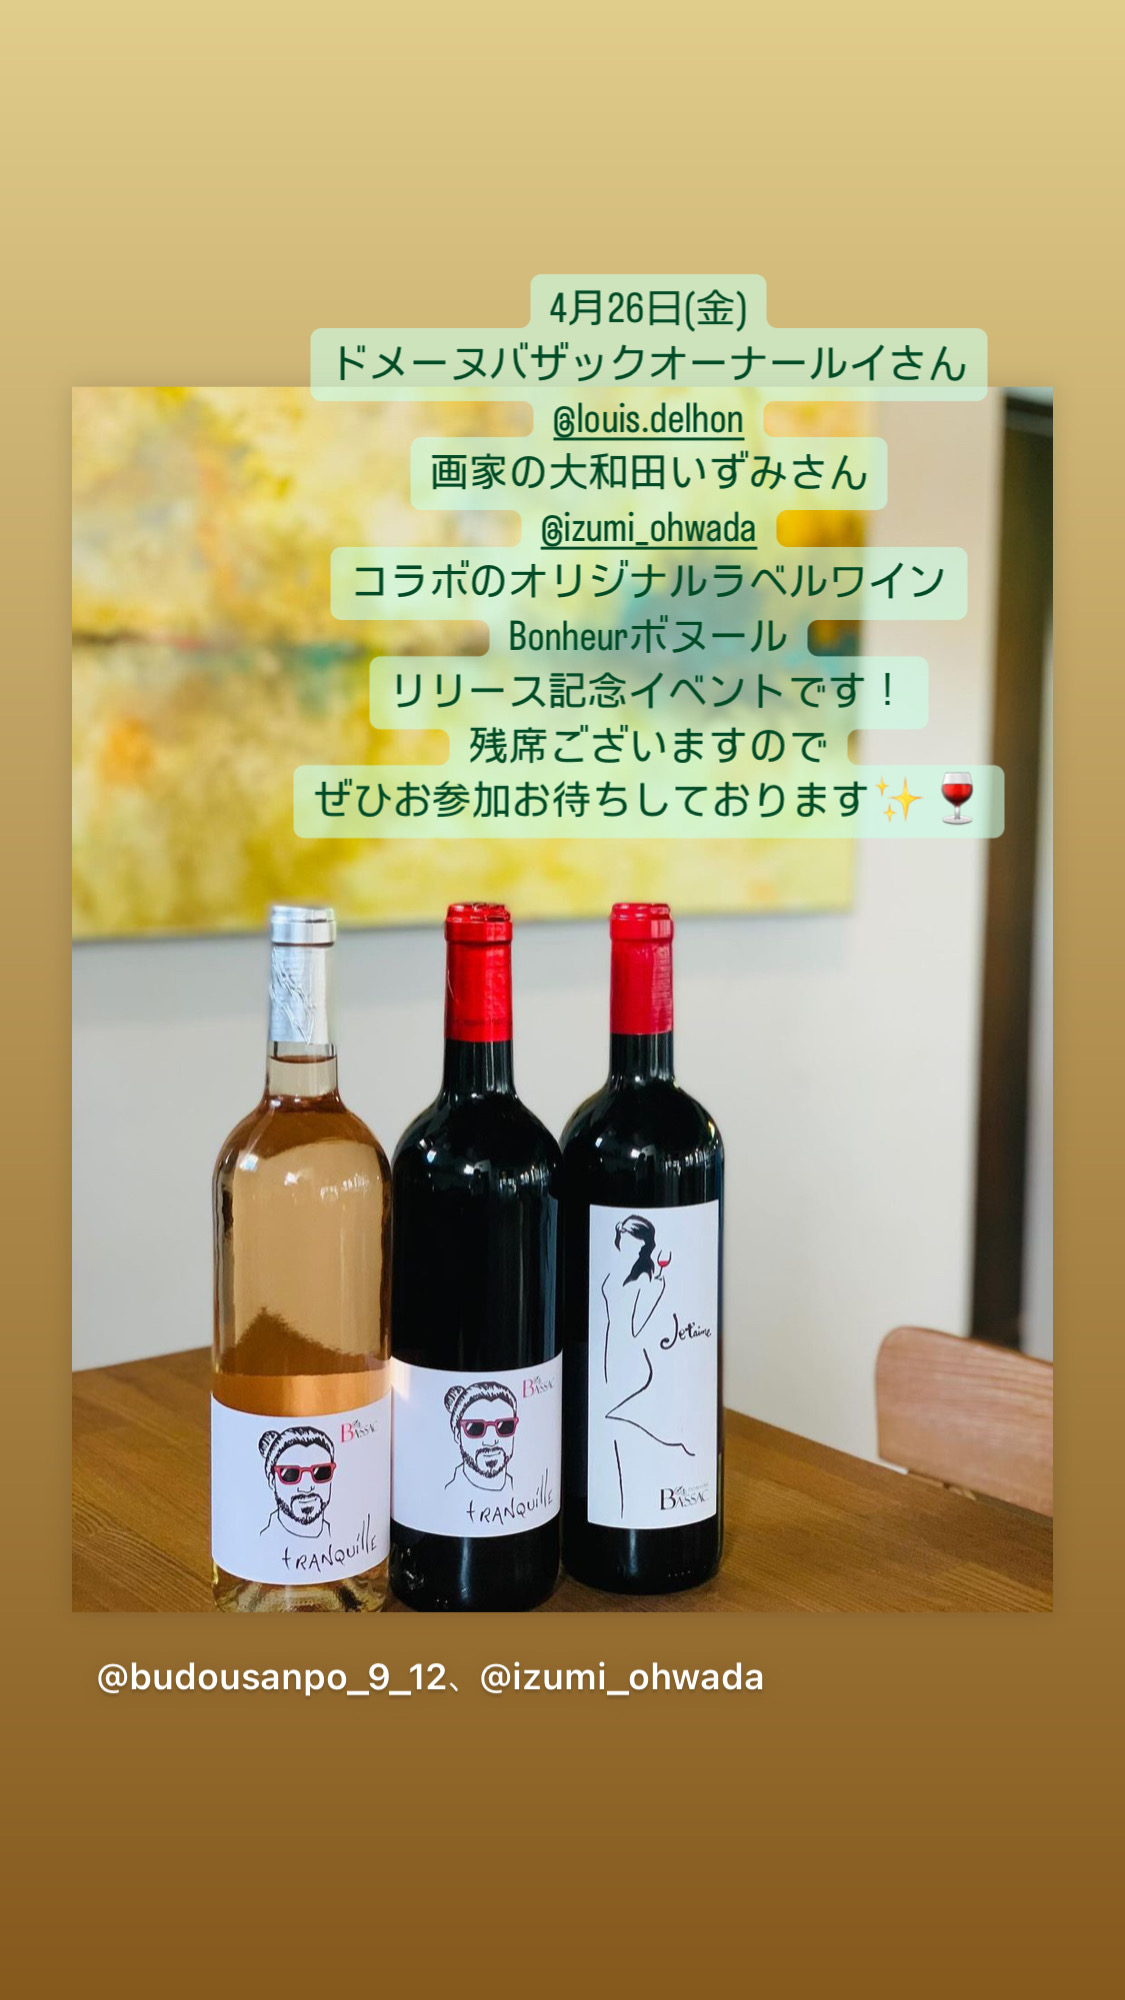 4月26日(金)オリジナルラベルワインリリース記念イベントです！